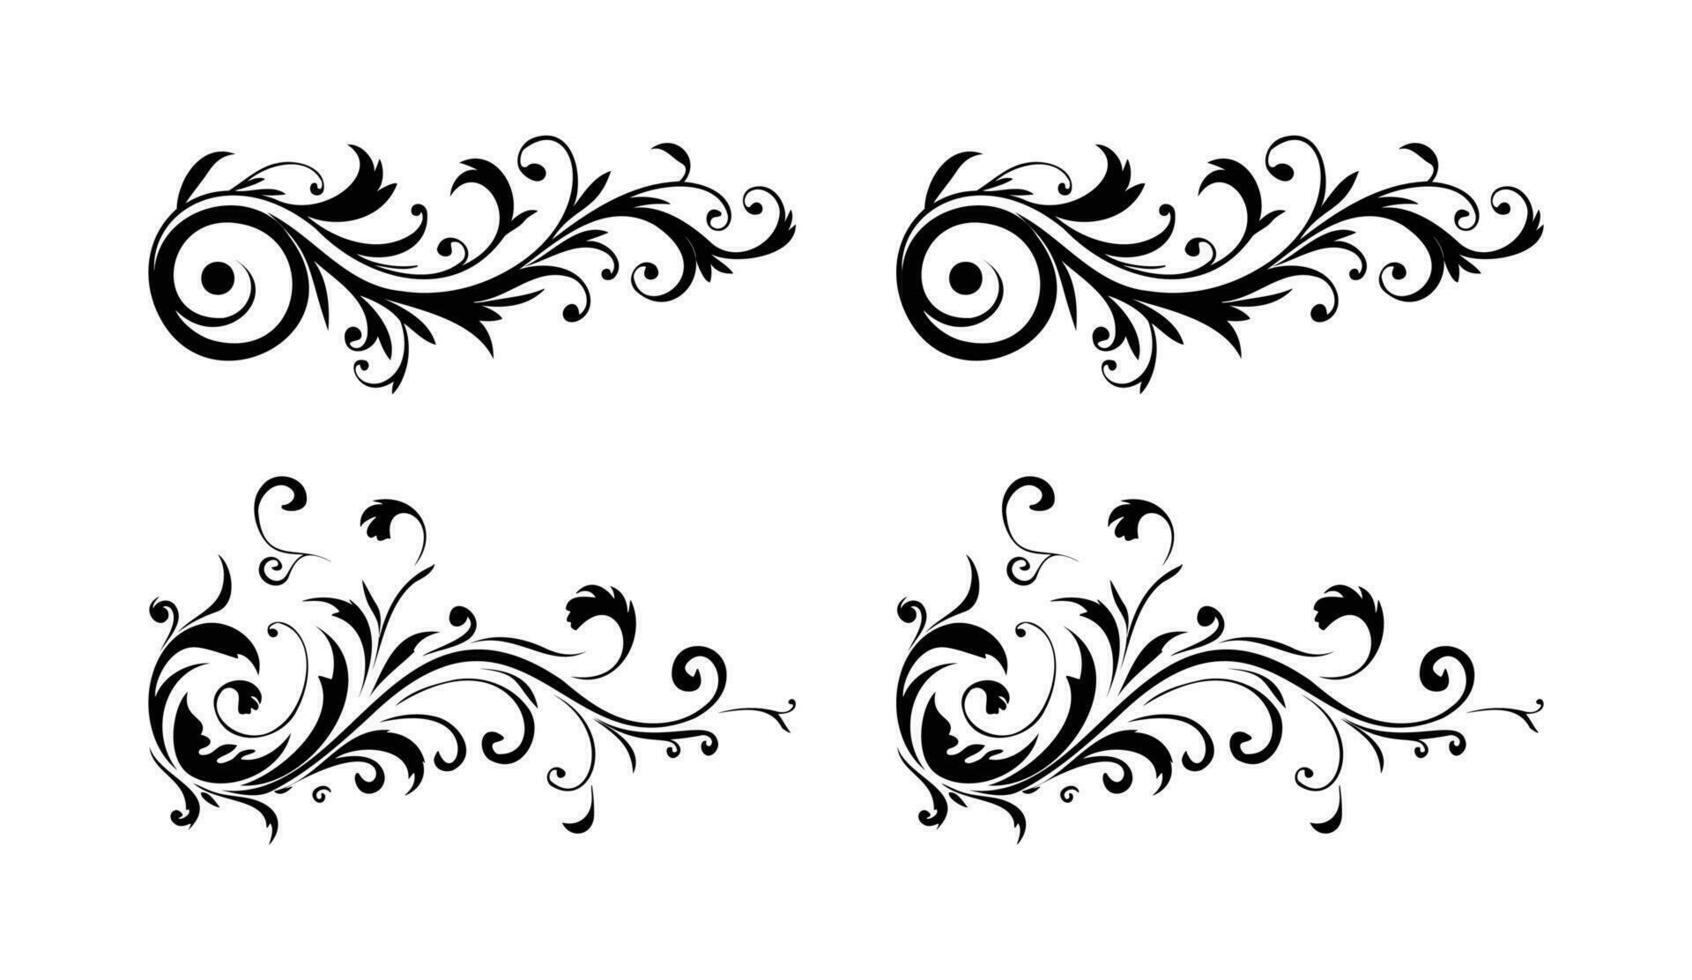 Blumen- Eleganz kalligraphisch einstellen mit aufwendig dekorativ Beschriftung und Grafik vektor